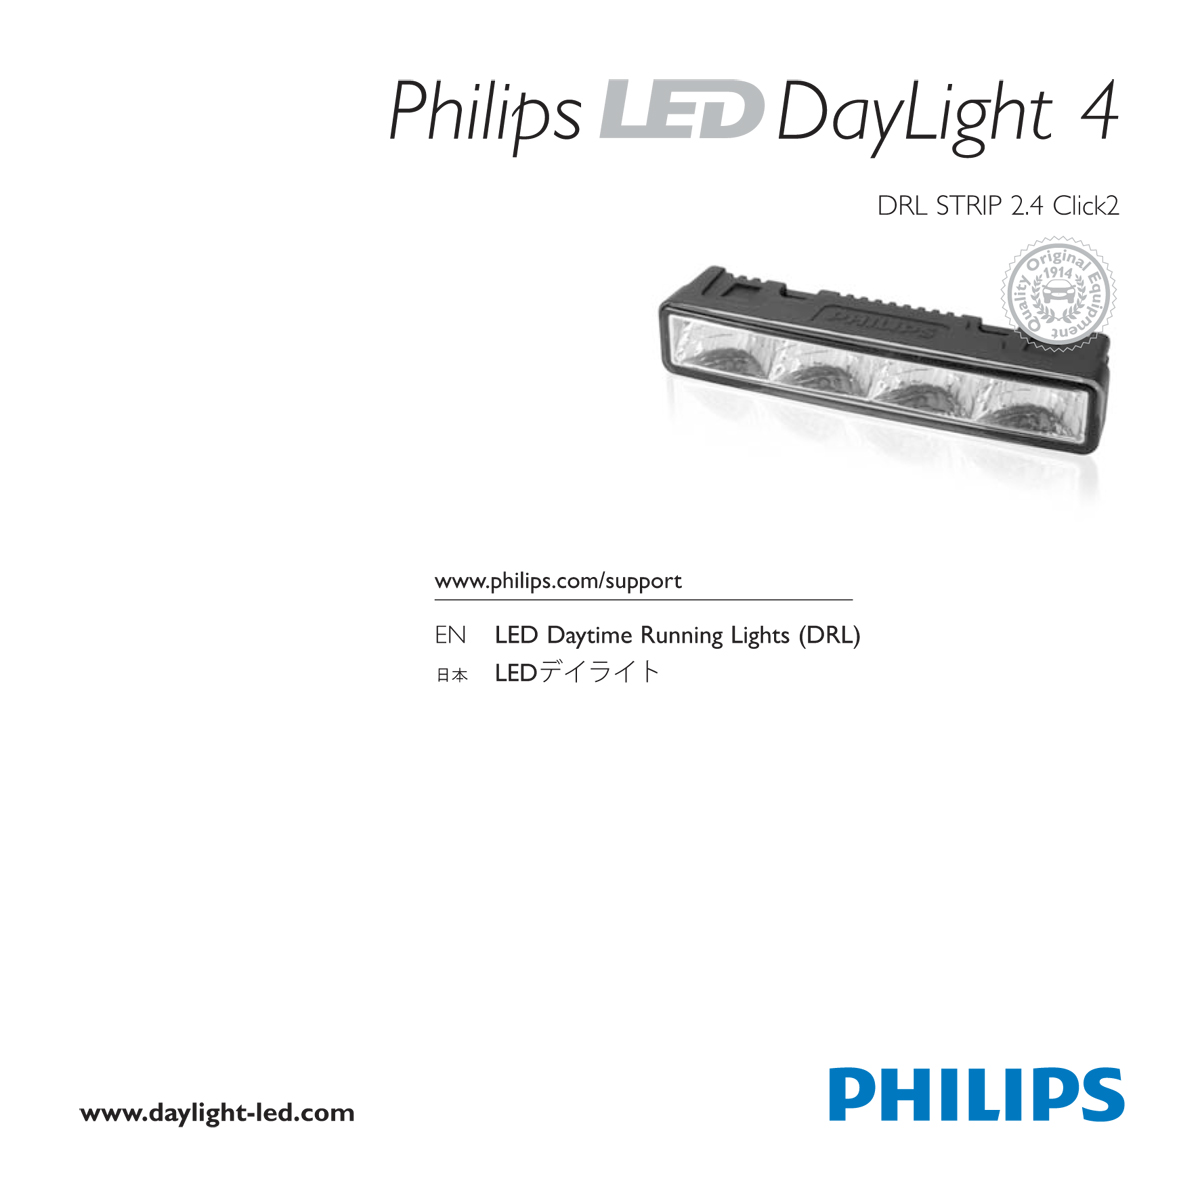 Philips LED DayLight 4 user guide - full pdf version